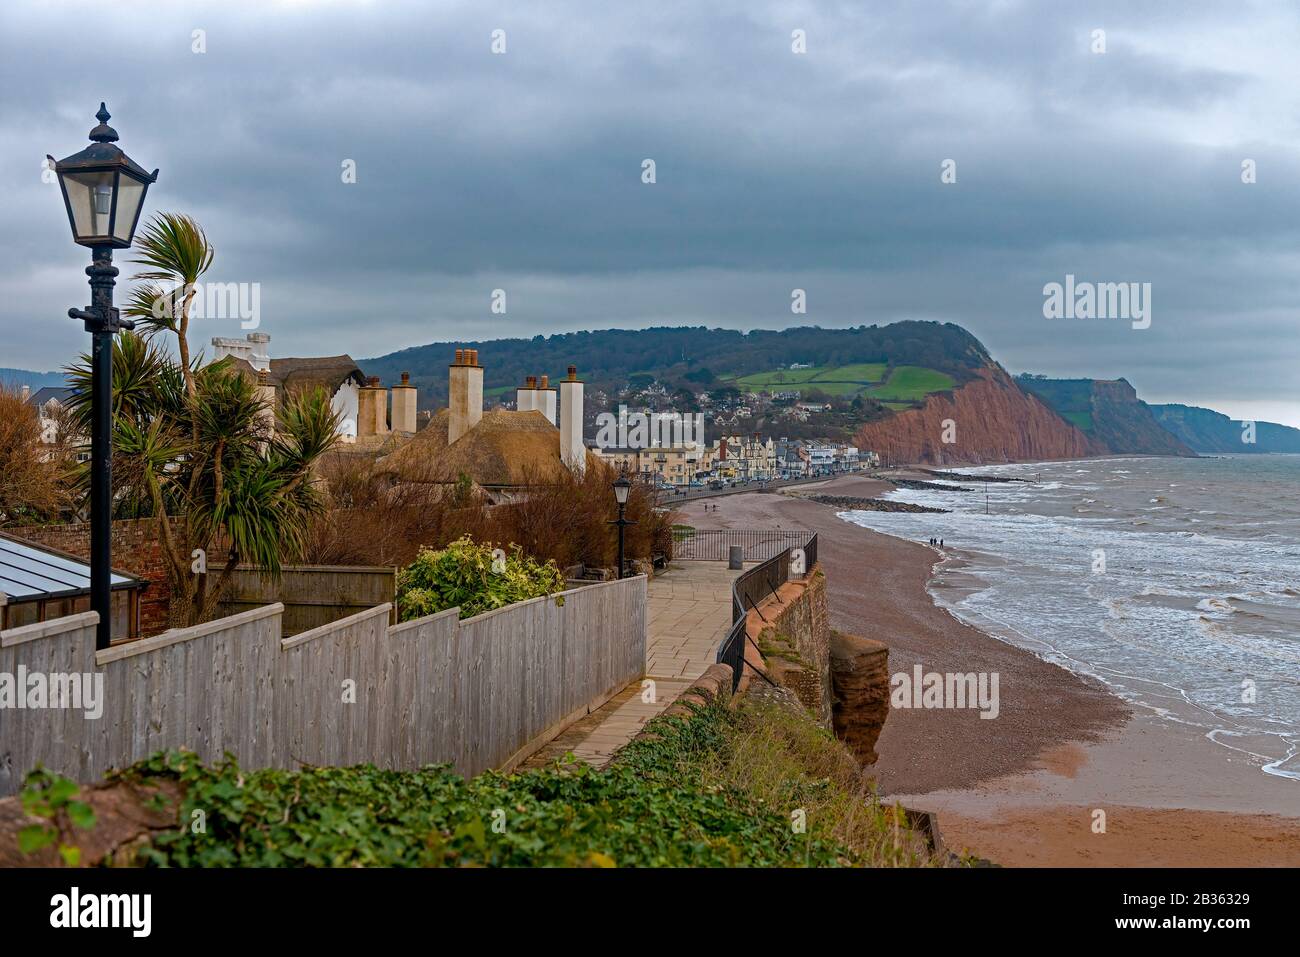 Meer, Strand und Küste von Sidmouth, einer kleinen beliebten Küstenstadt an der Südküste von Devon im Südwesten Englands Stockfoto